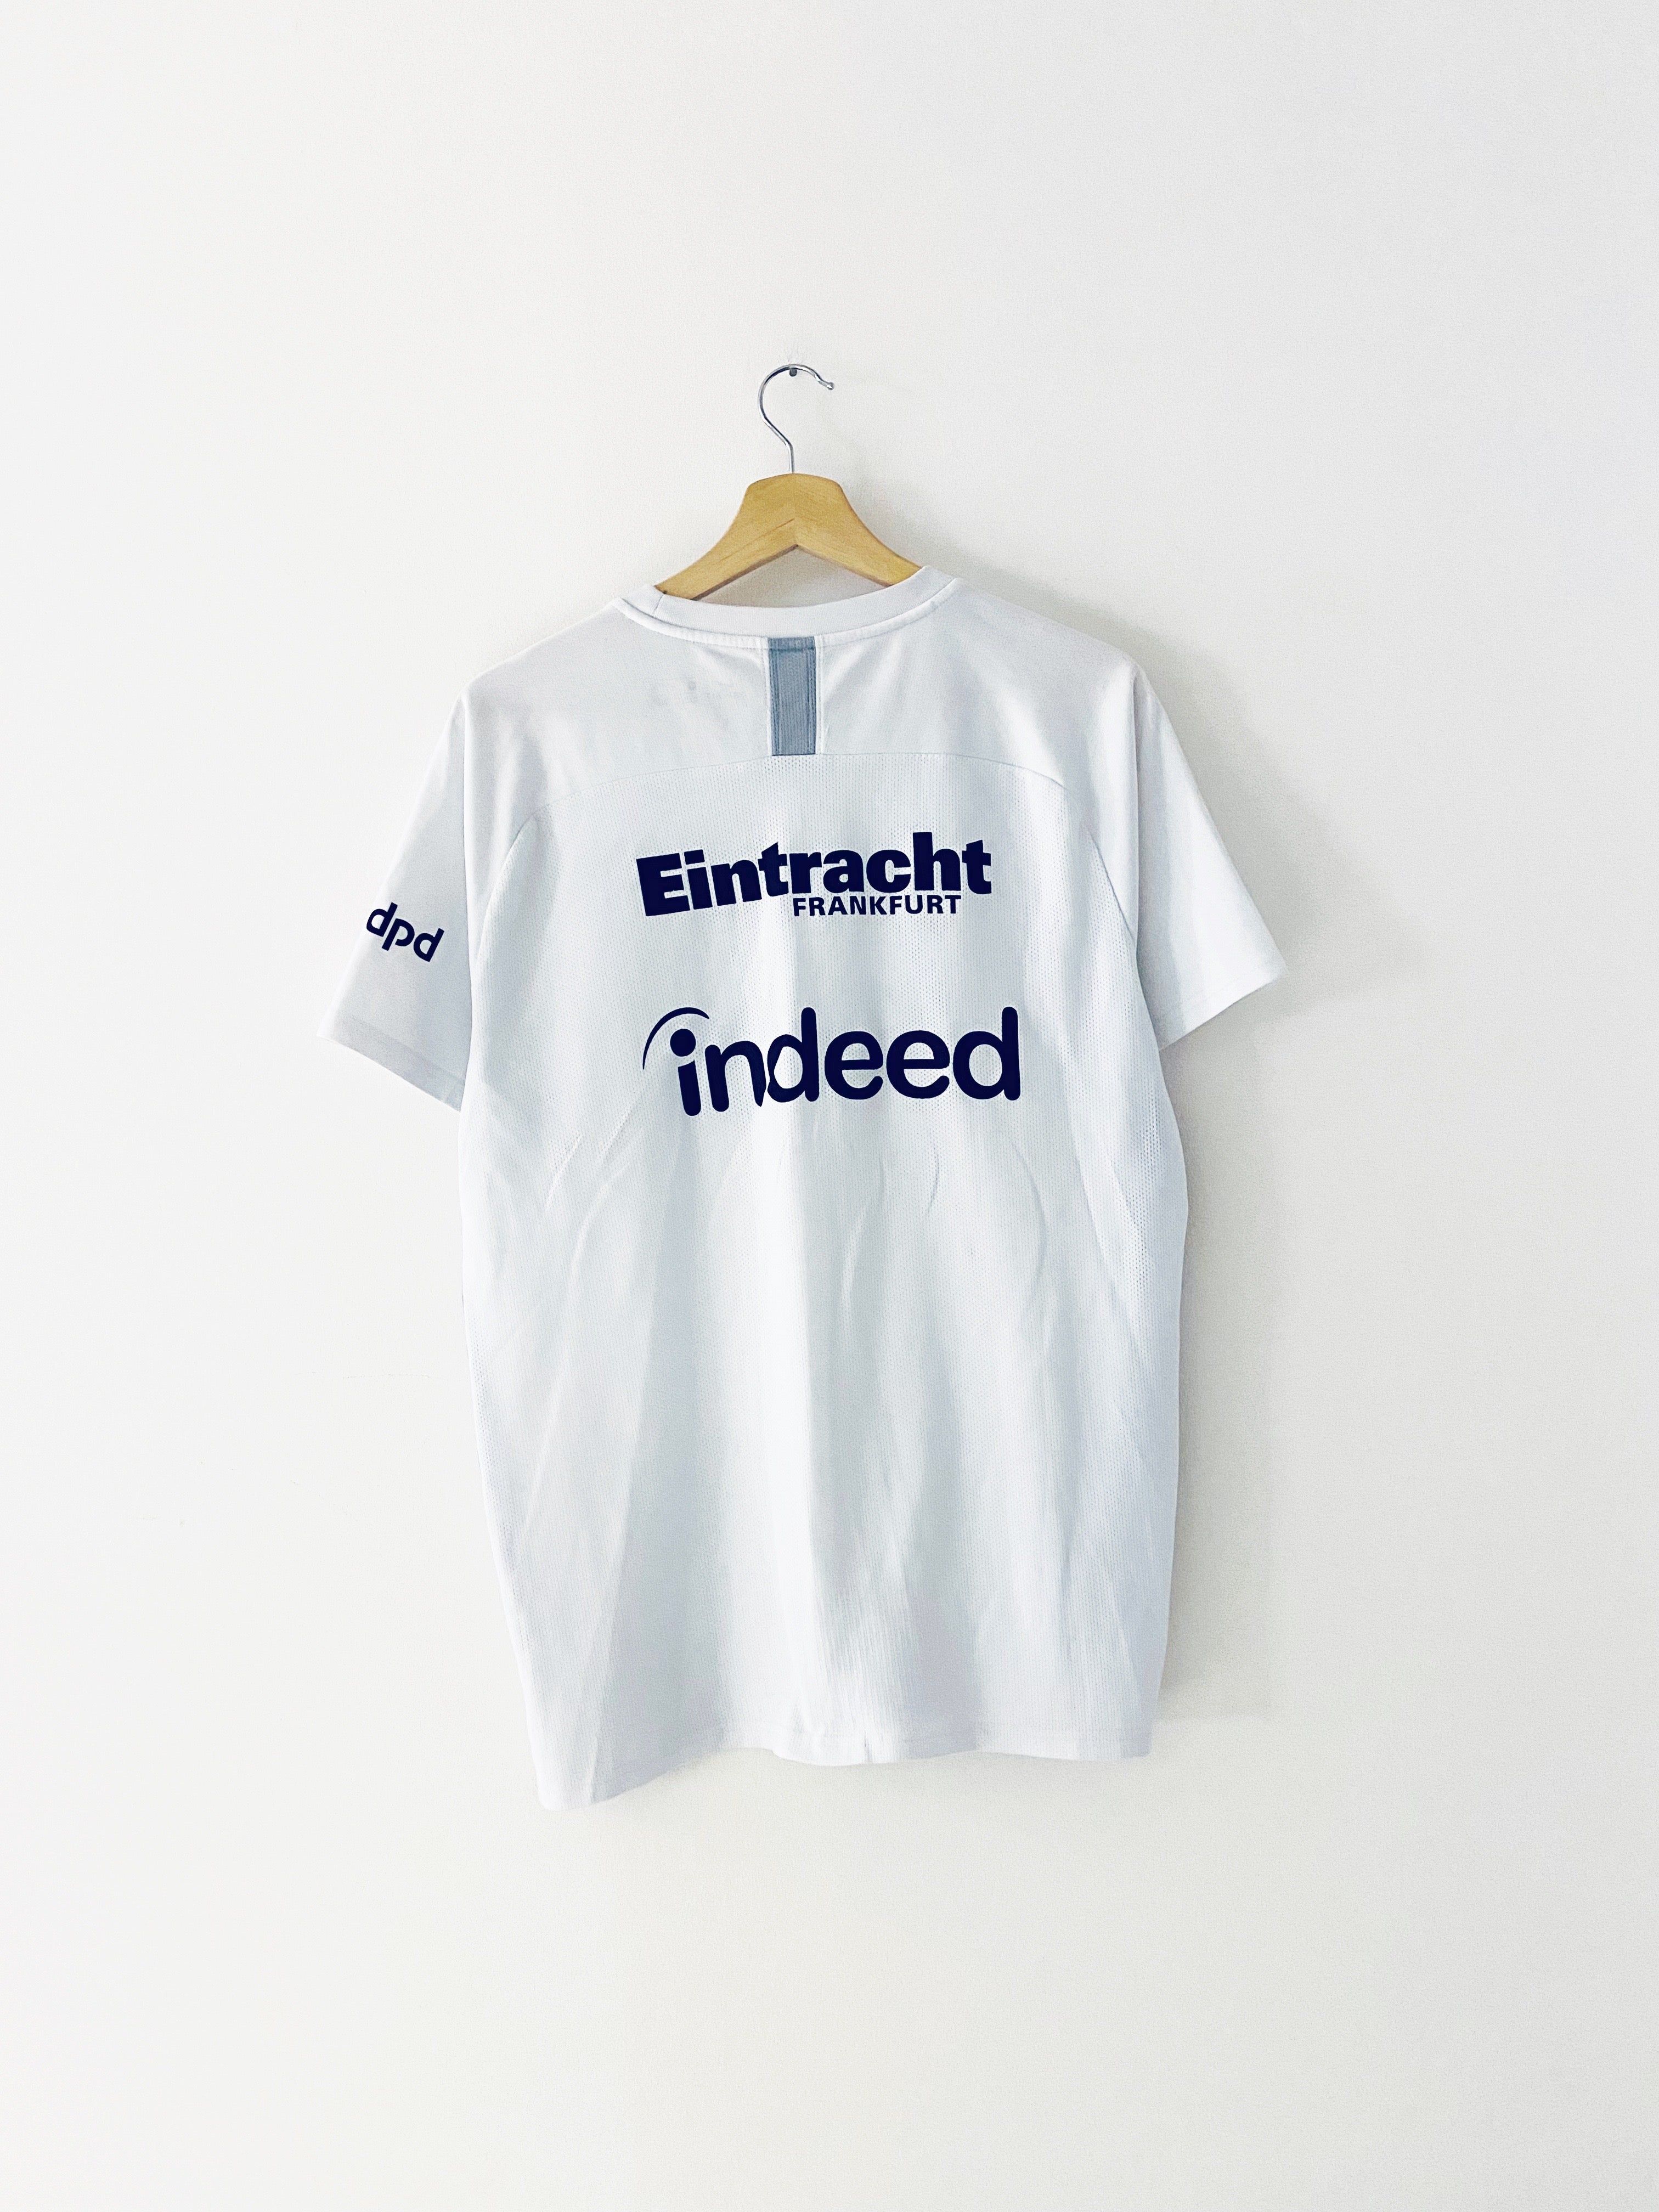 2018/19 Eintracht Frankfurt *Player Issue* Camiseta de entrenamiento (XL) 8/10